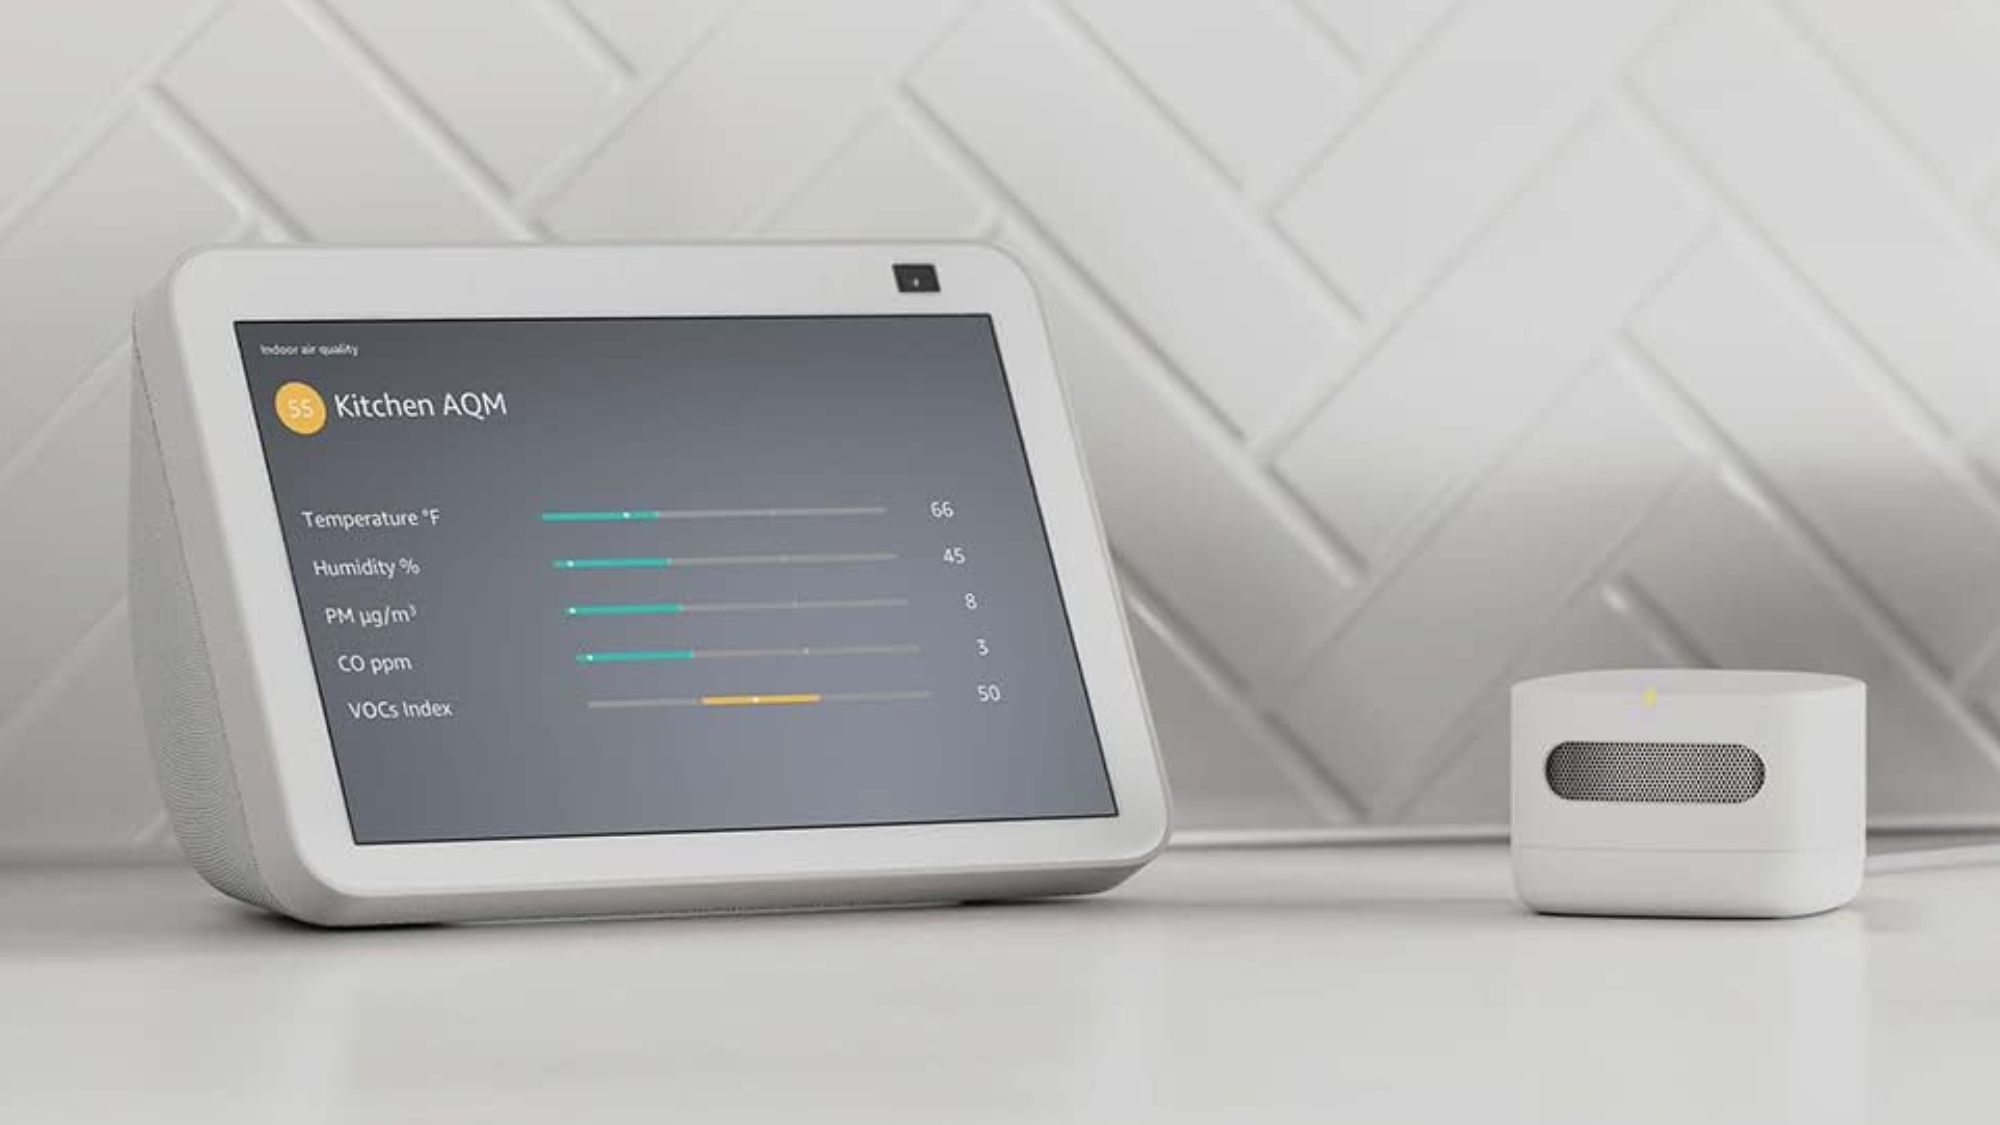 Amazon akıllı hava kalitesi monitörü, hava puanını gösteren Echo Show ile masanın üzerinde duruyor